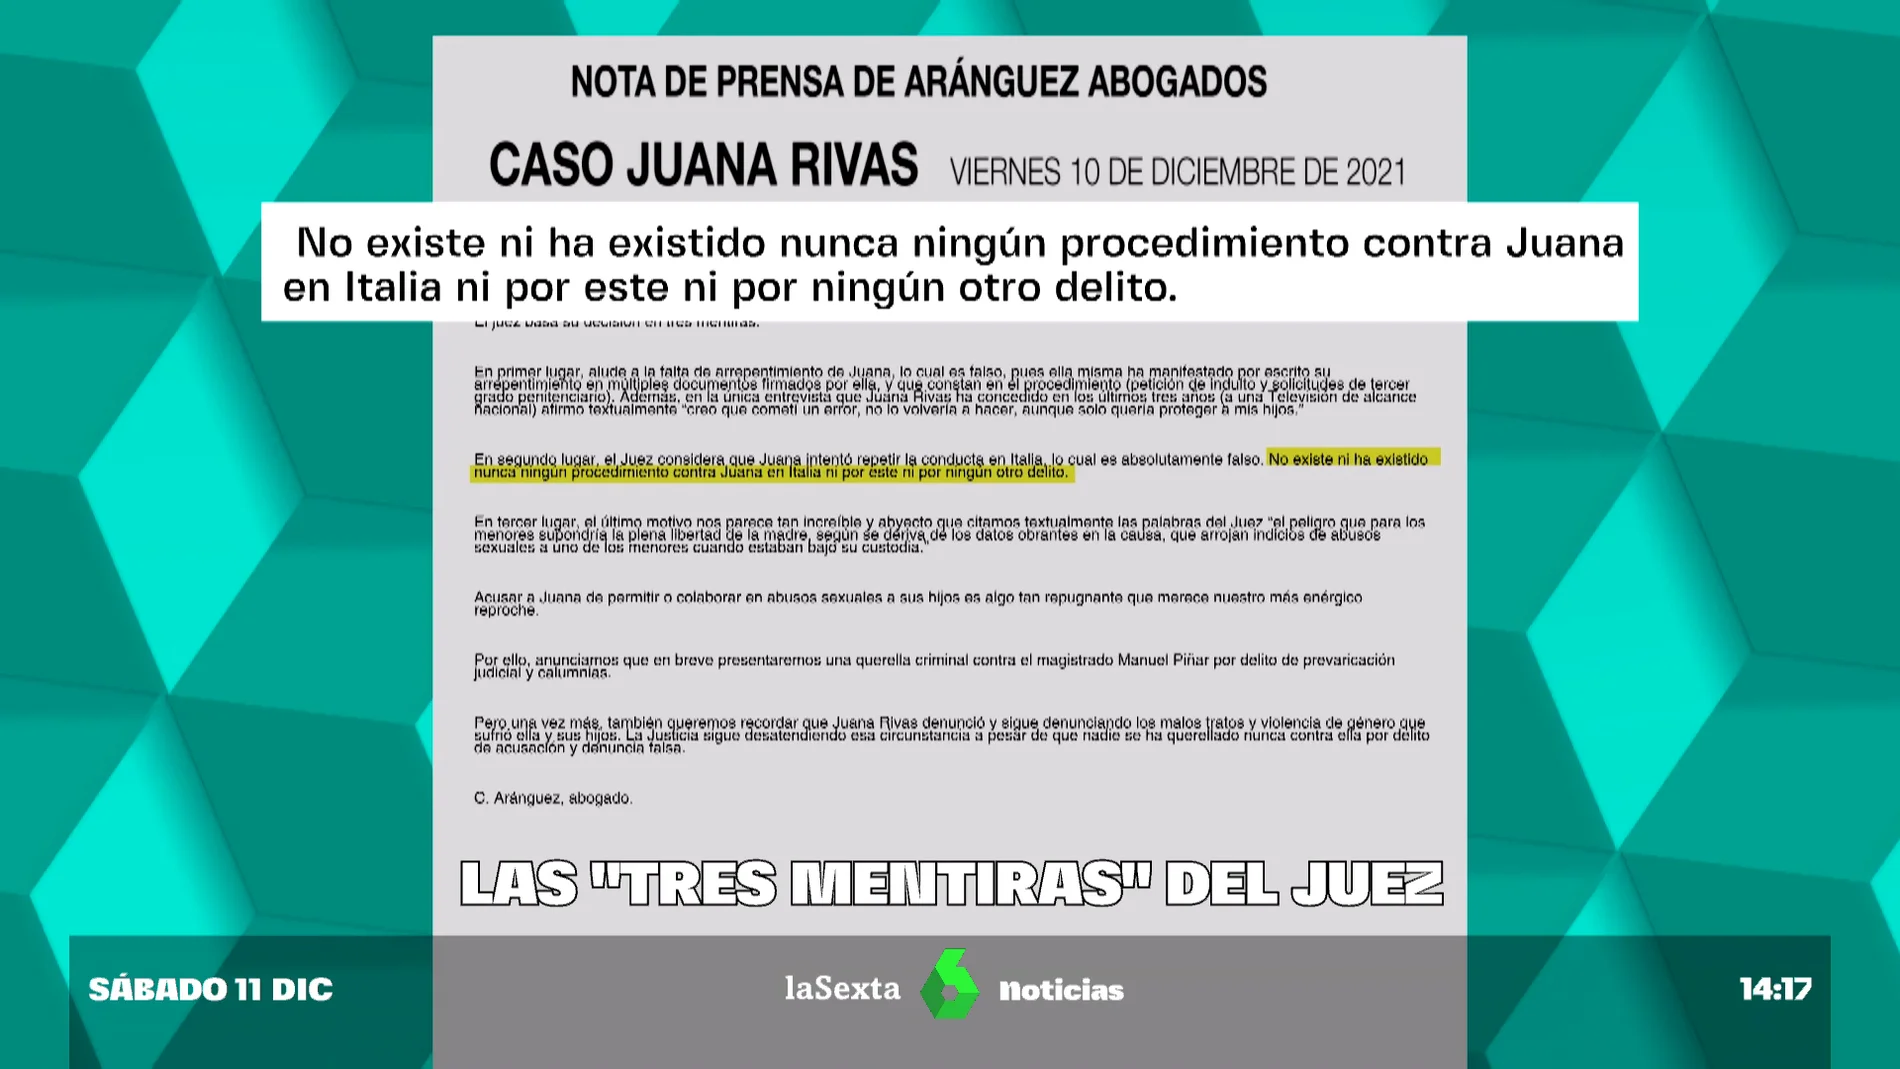 Los informes que niegan que haya indicios de abusos sexuales por parte de Juana Rivas a sus hijos